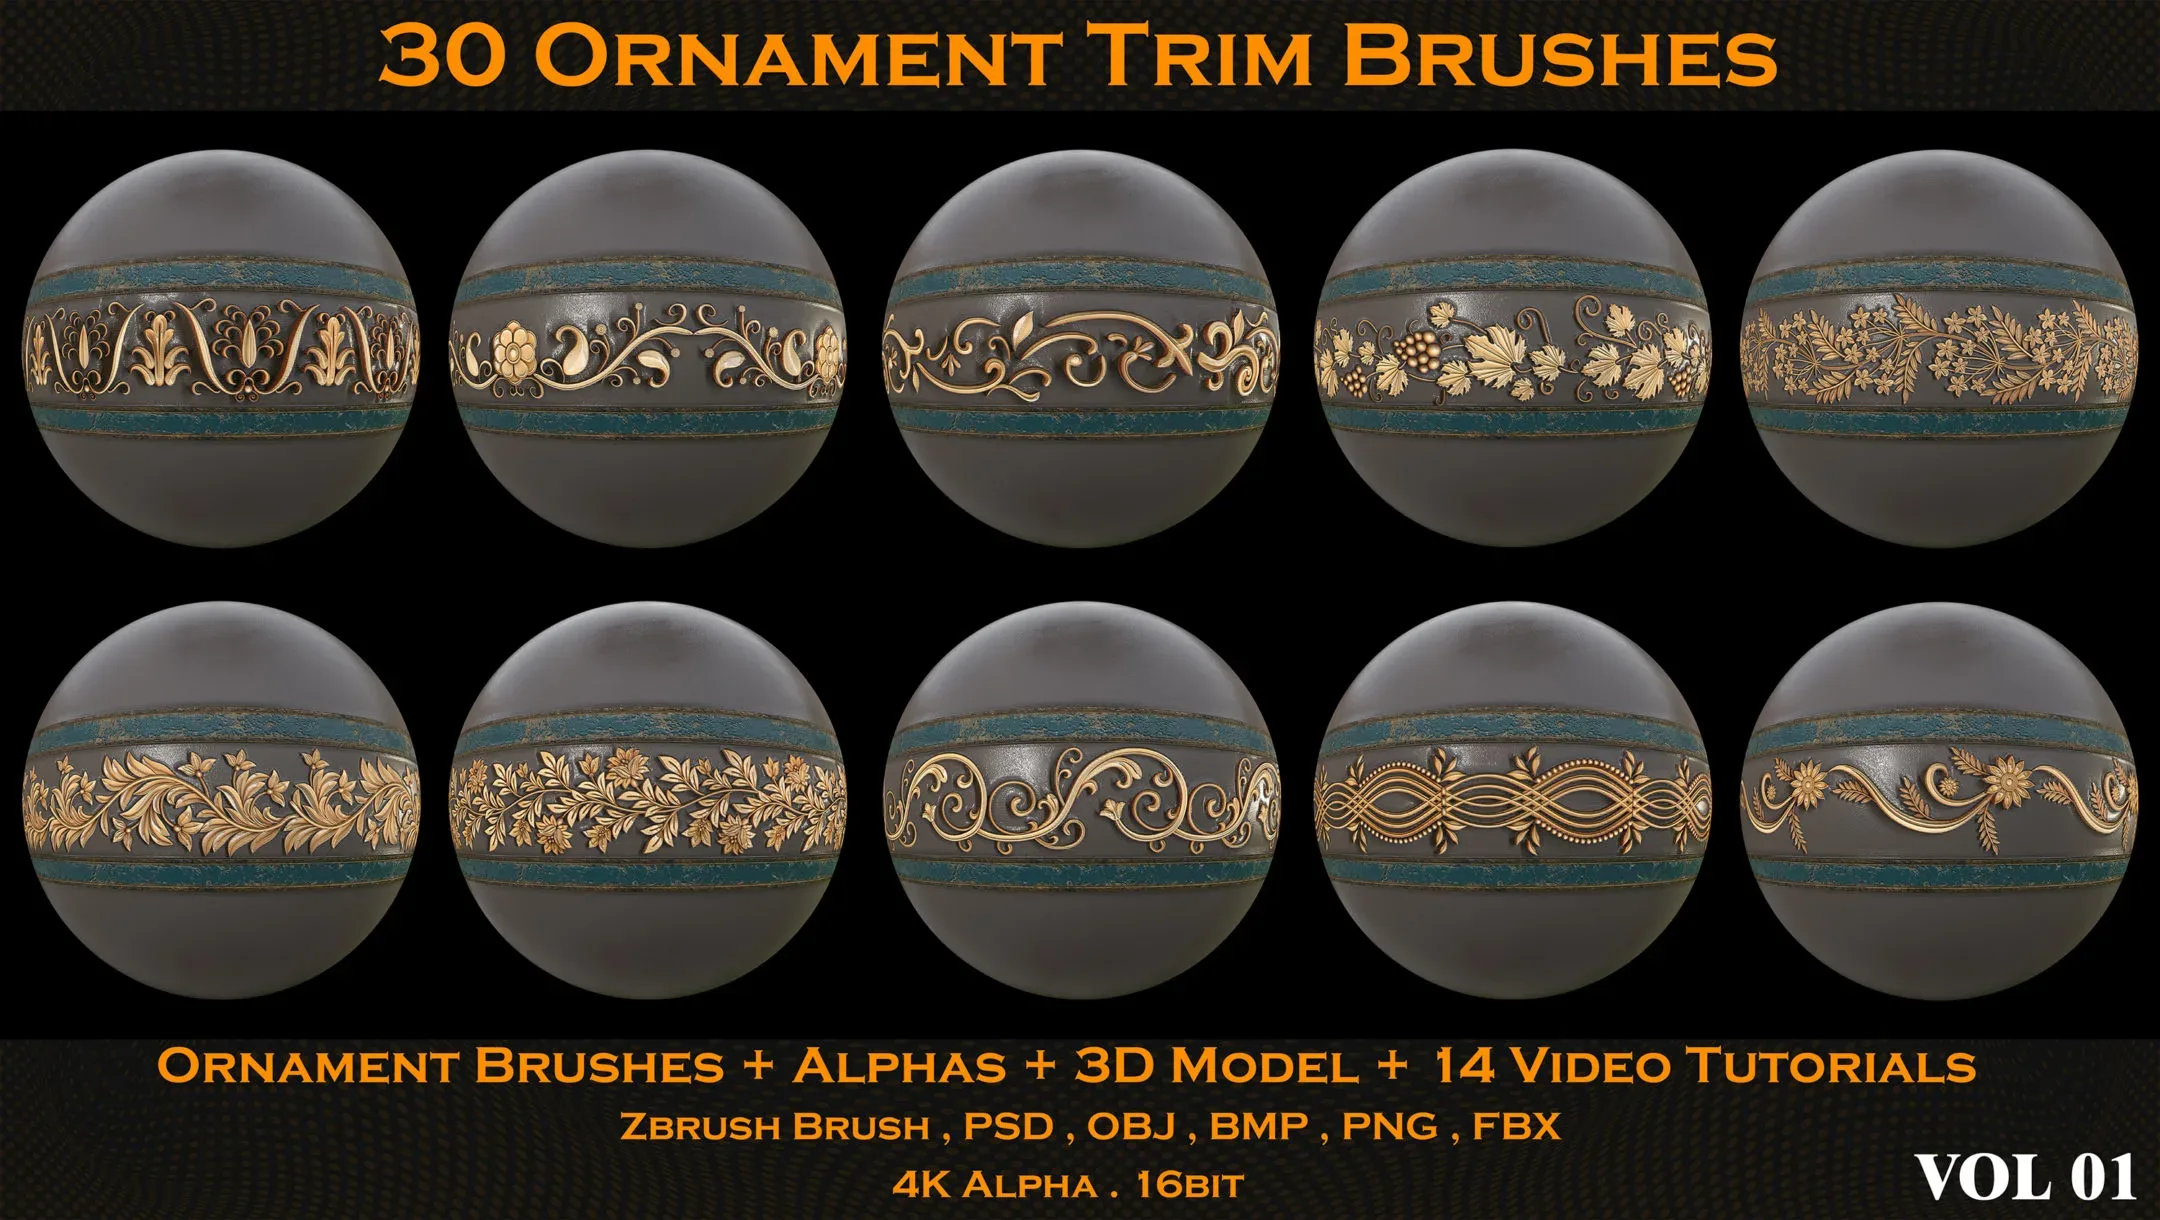 30 Ornament Trim Brushes + Alphas + 3D Model + 14 Video Tutorials (VOL 01)